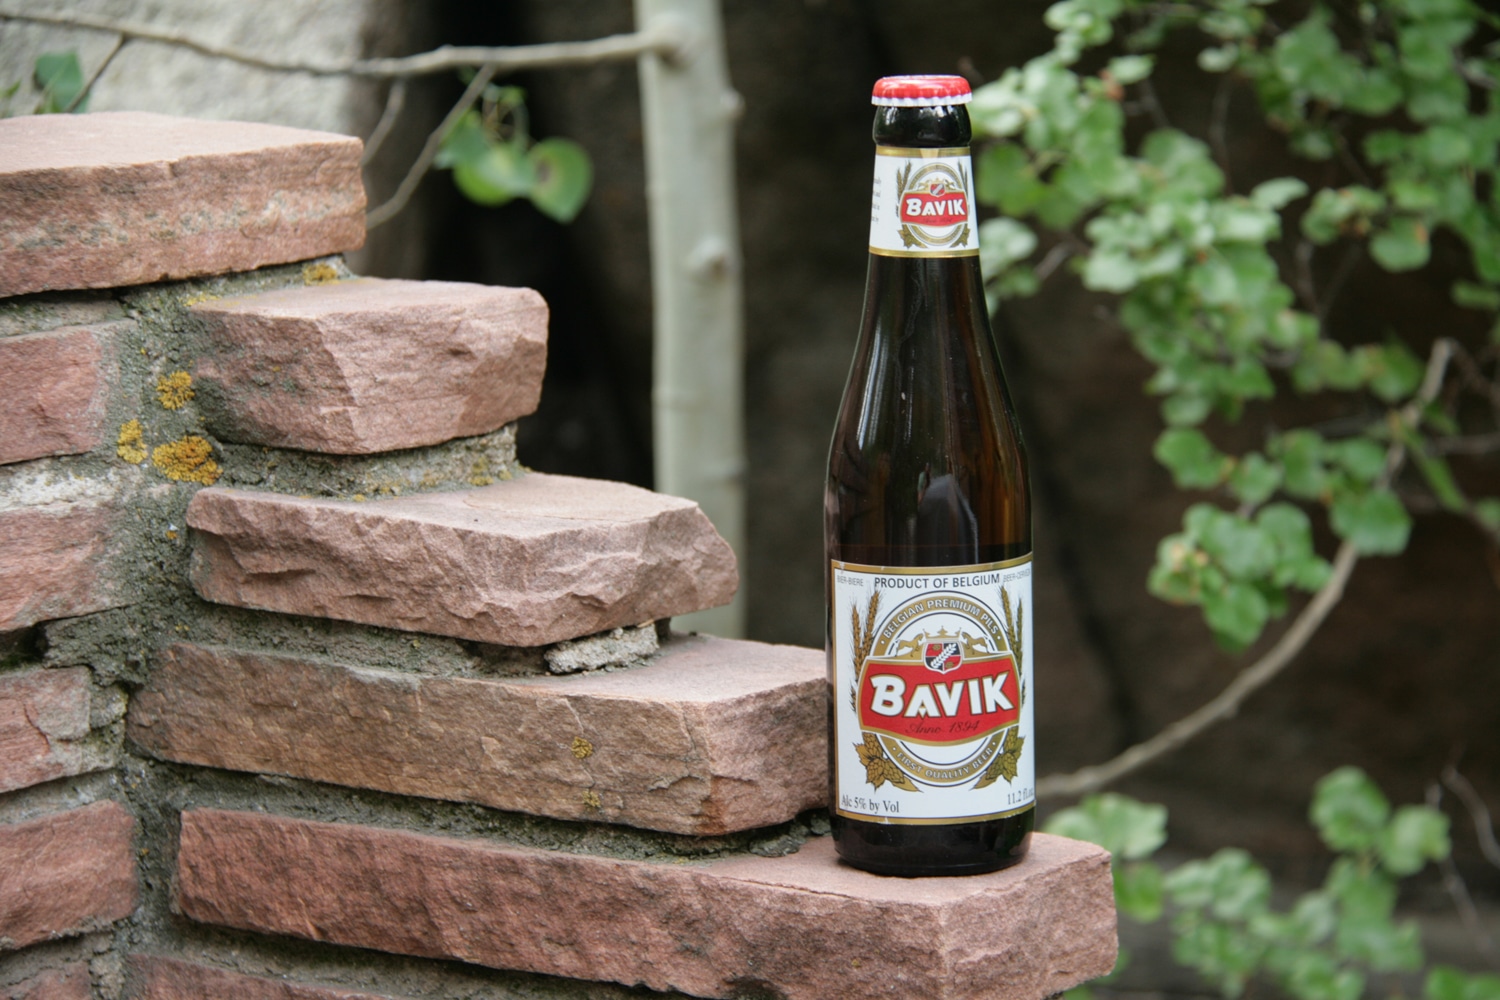 Bavik Pils is a Belgium summer beer.